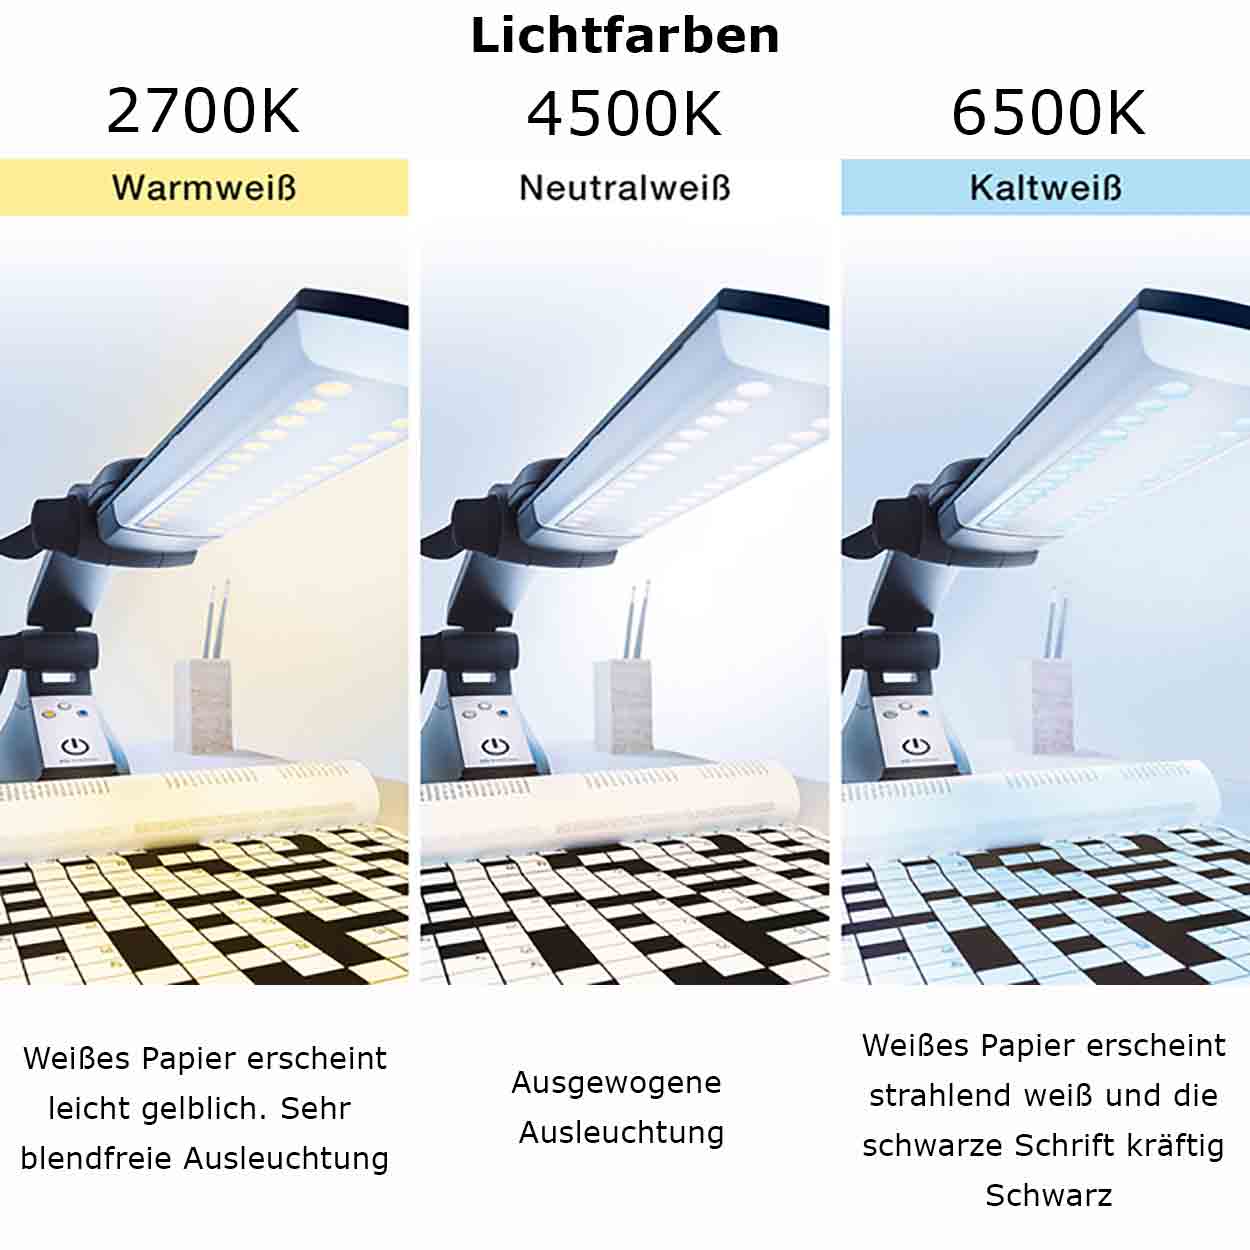 Schweizer Multilight Pro LED Akku Tischleseleuchte - mit 3 schaltbaren Lichtfarben